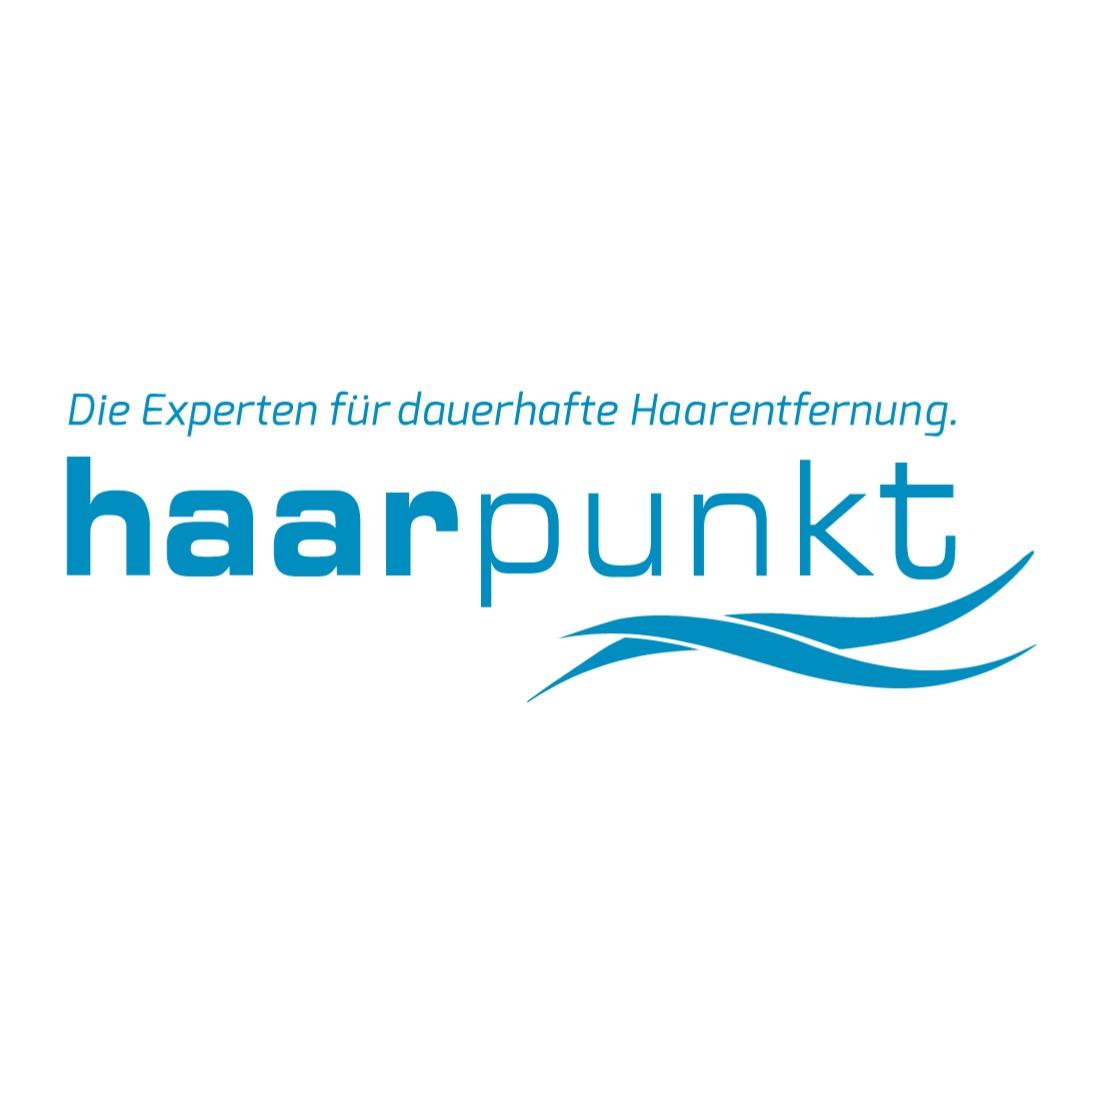 Haarpunkt Bonn, Dauerhafte Haarentfernung mit modernster Lasertechnologie in Bonn - Logo